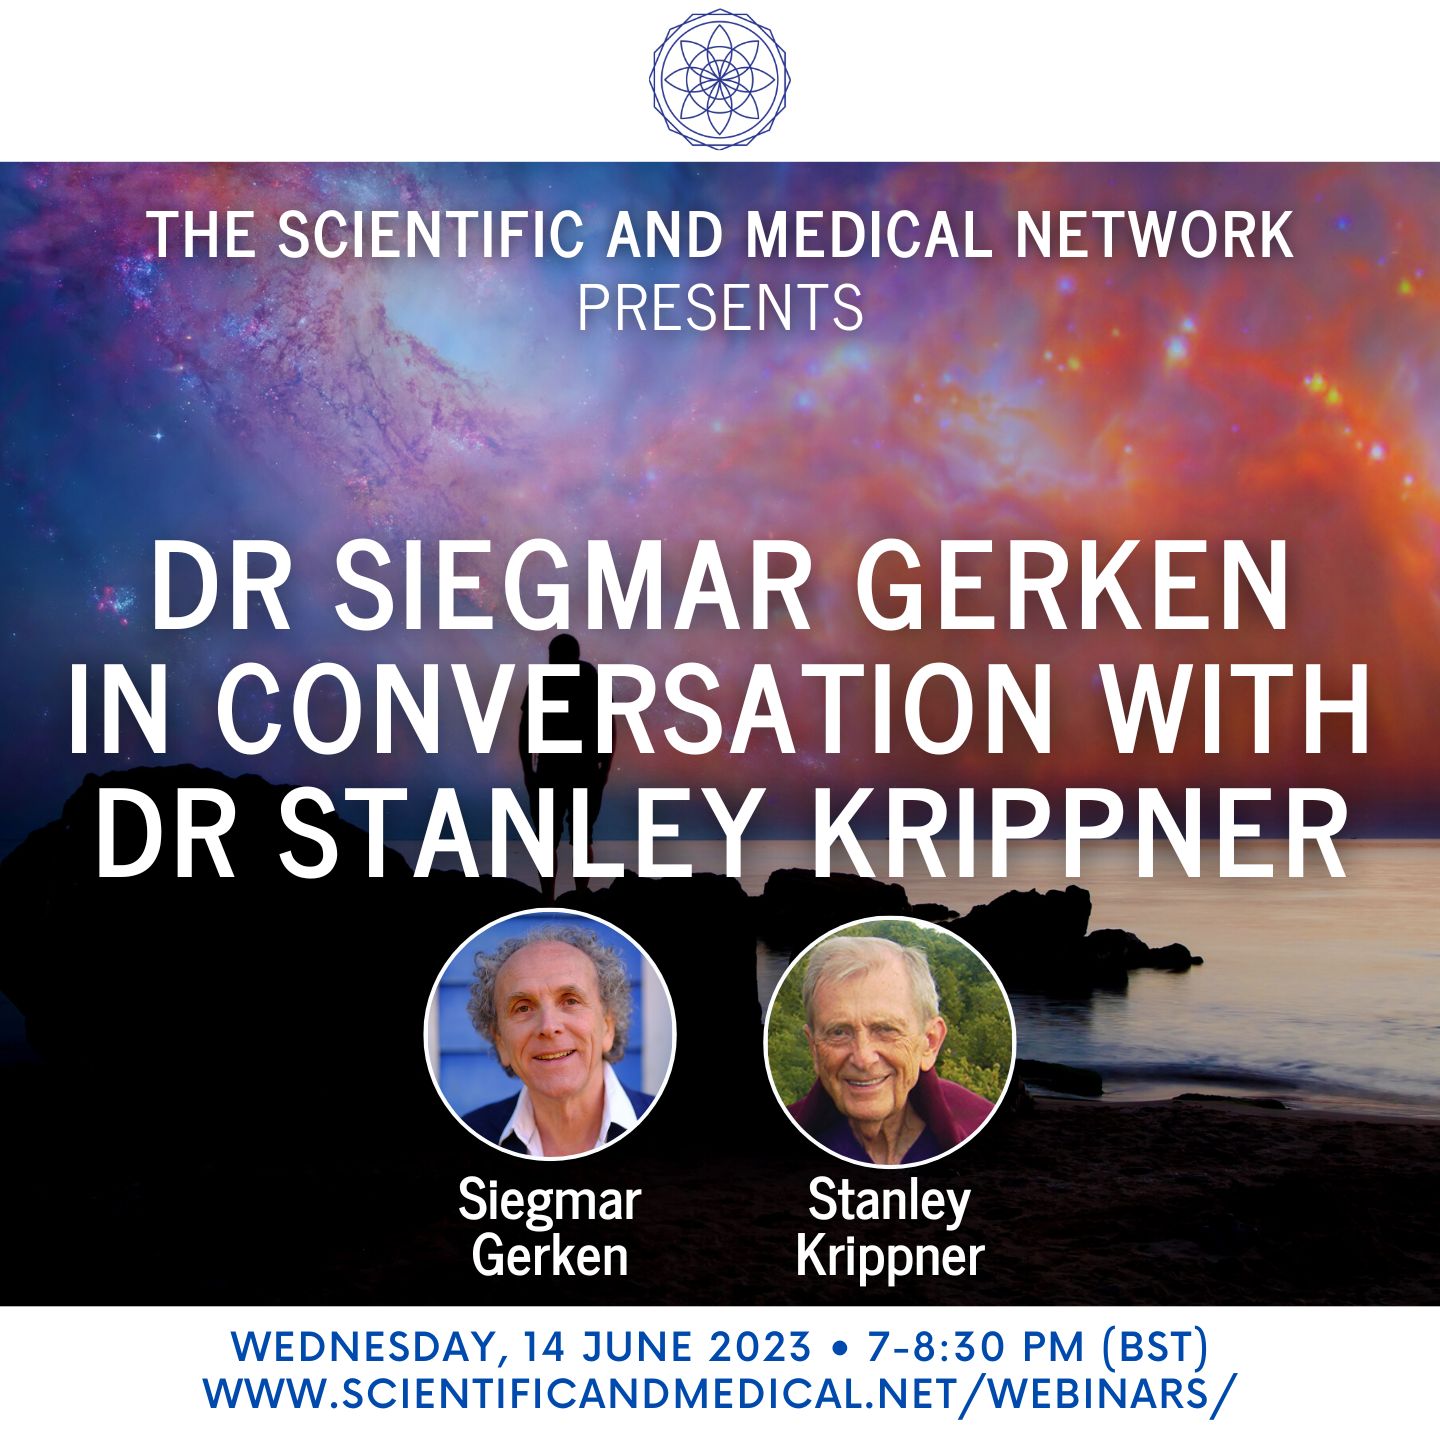 Dr Siegmar Gerken in conversation with Dr Stanley Krippner